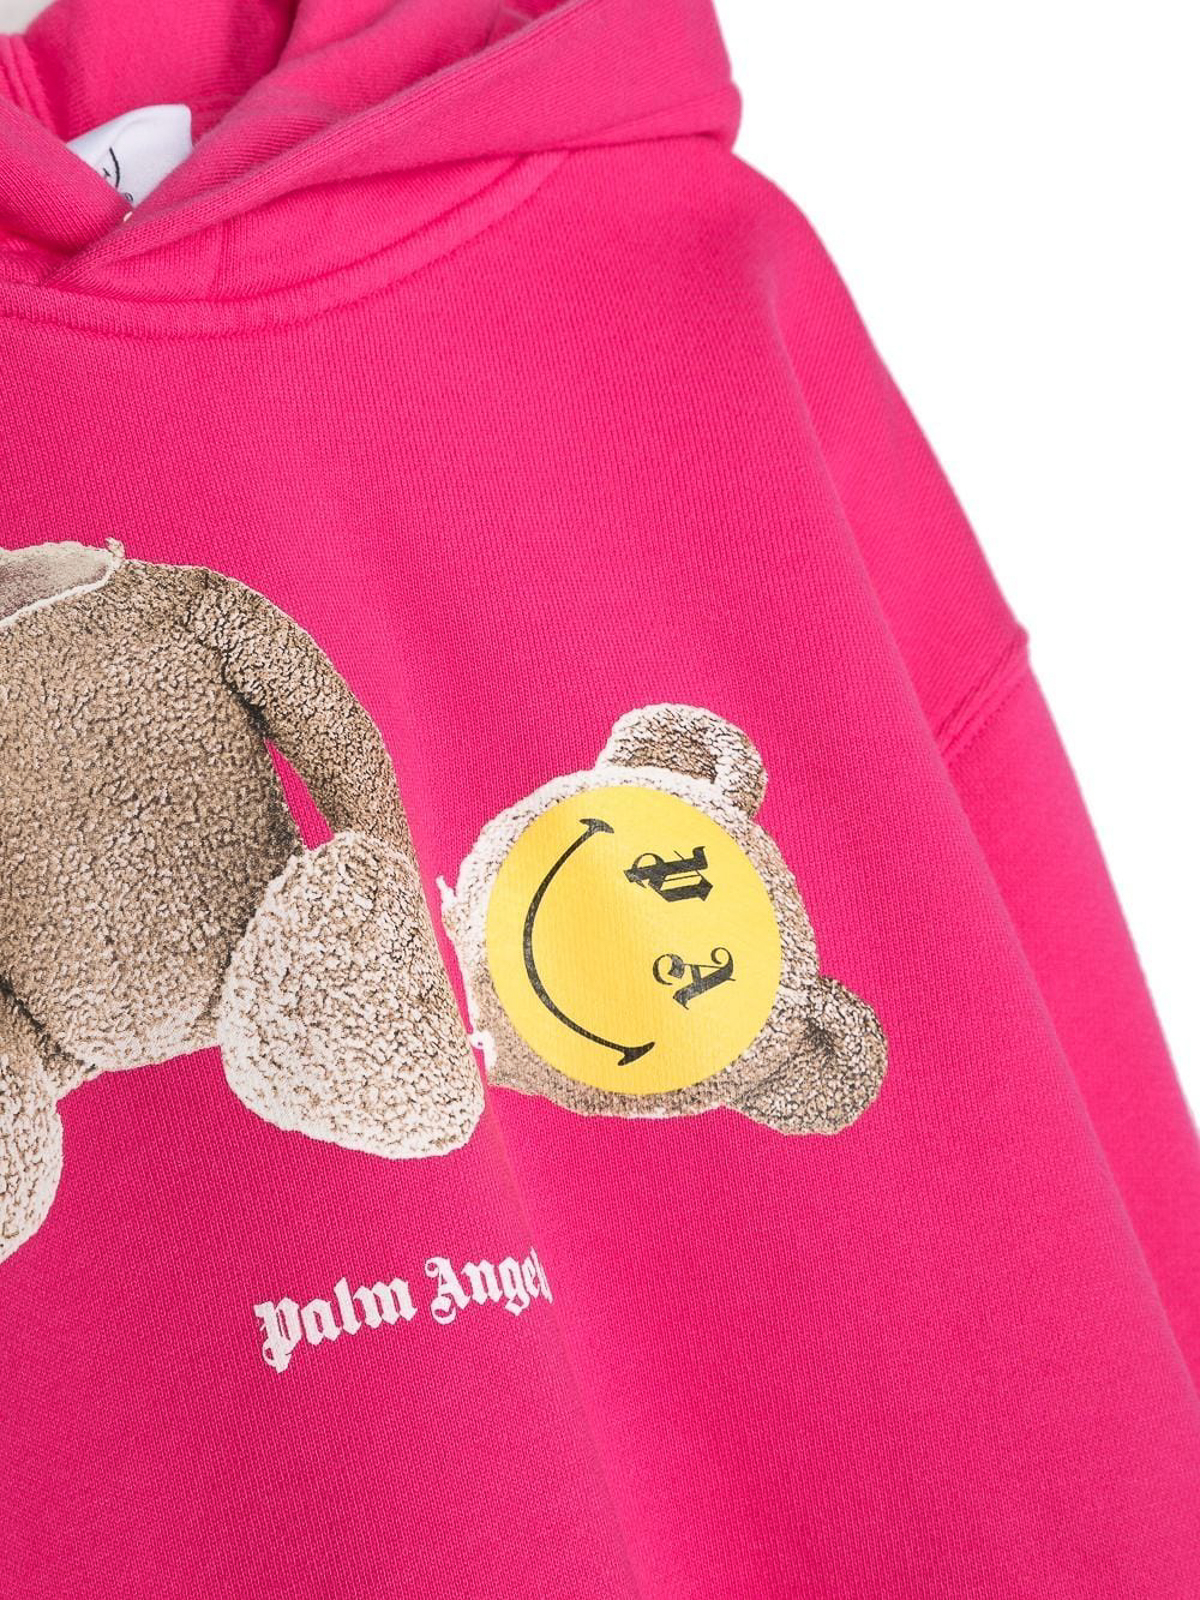 Palm Angels Smiley teddy-bear print hoodie